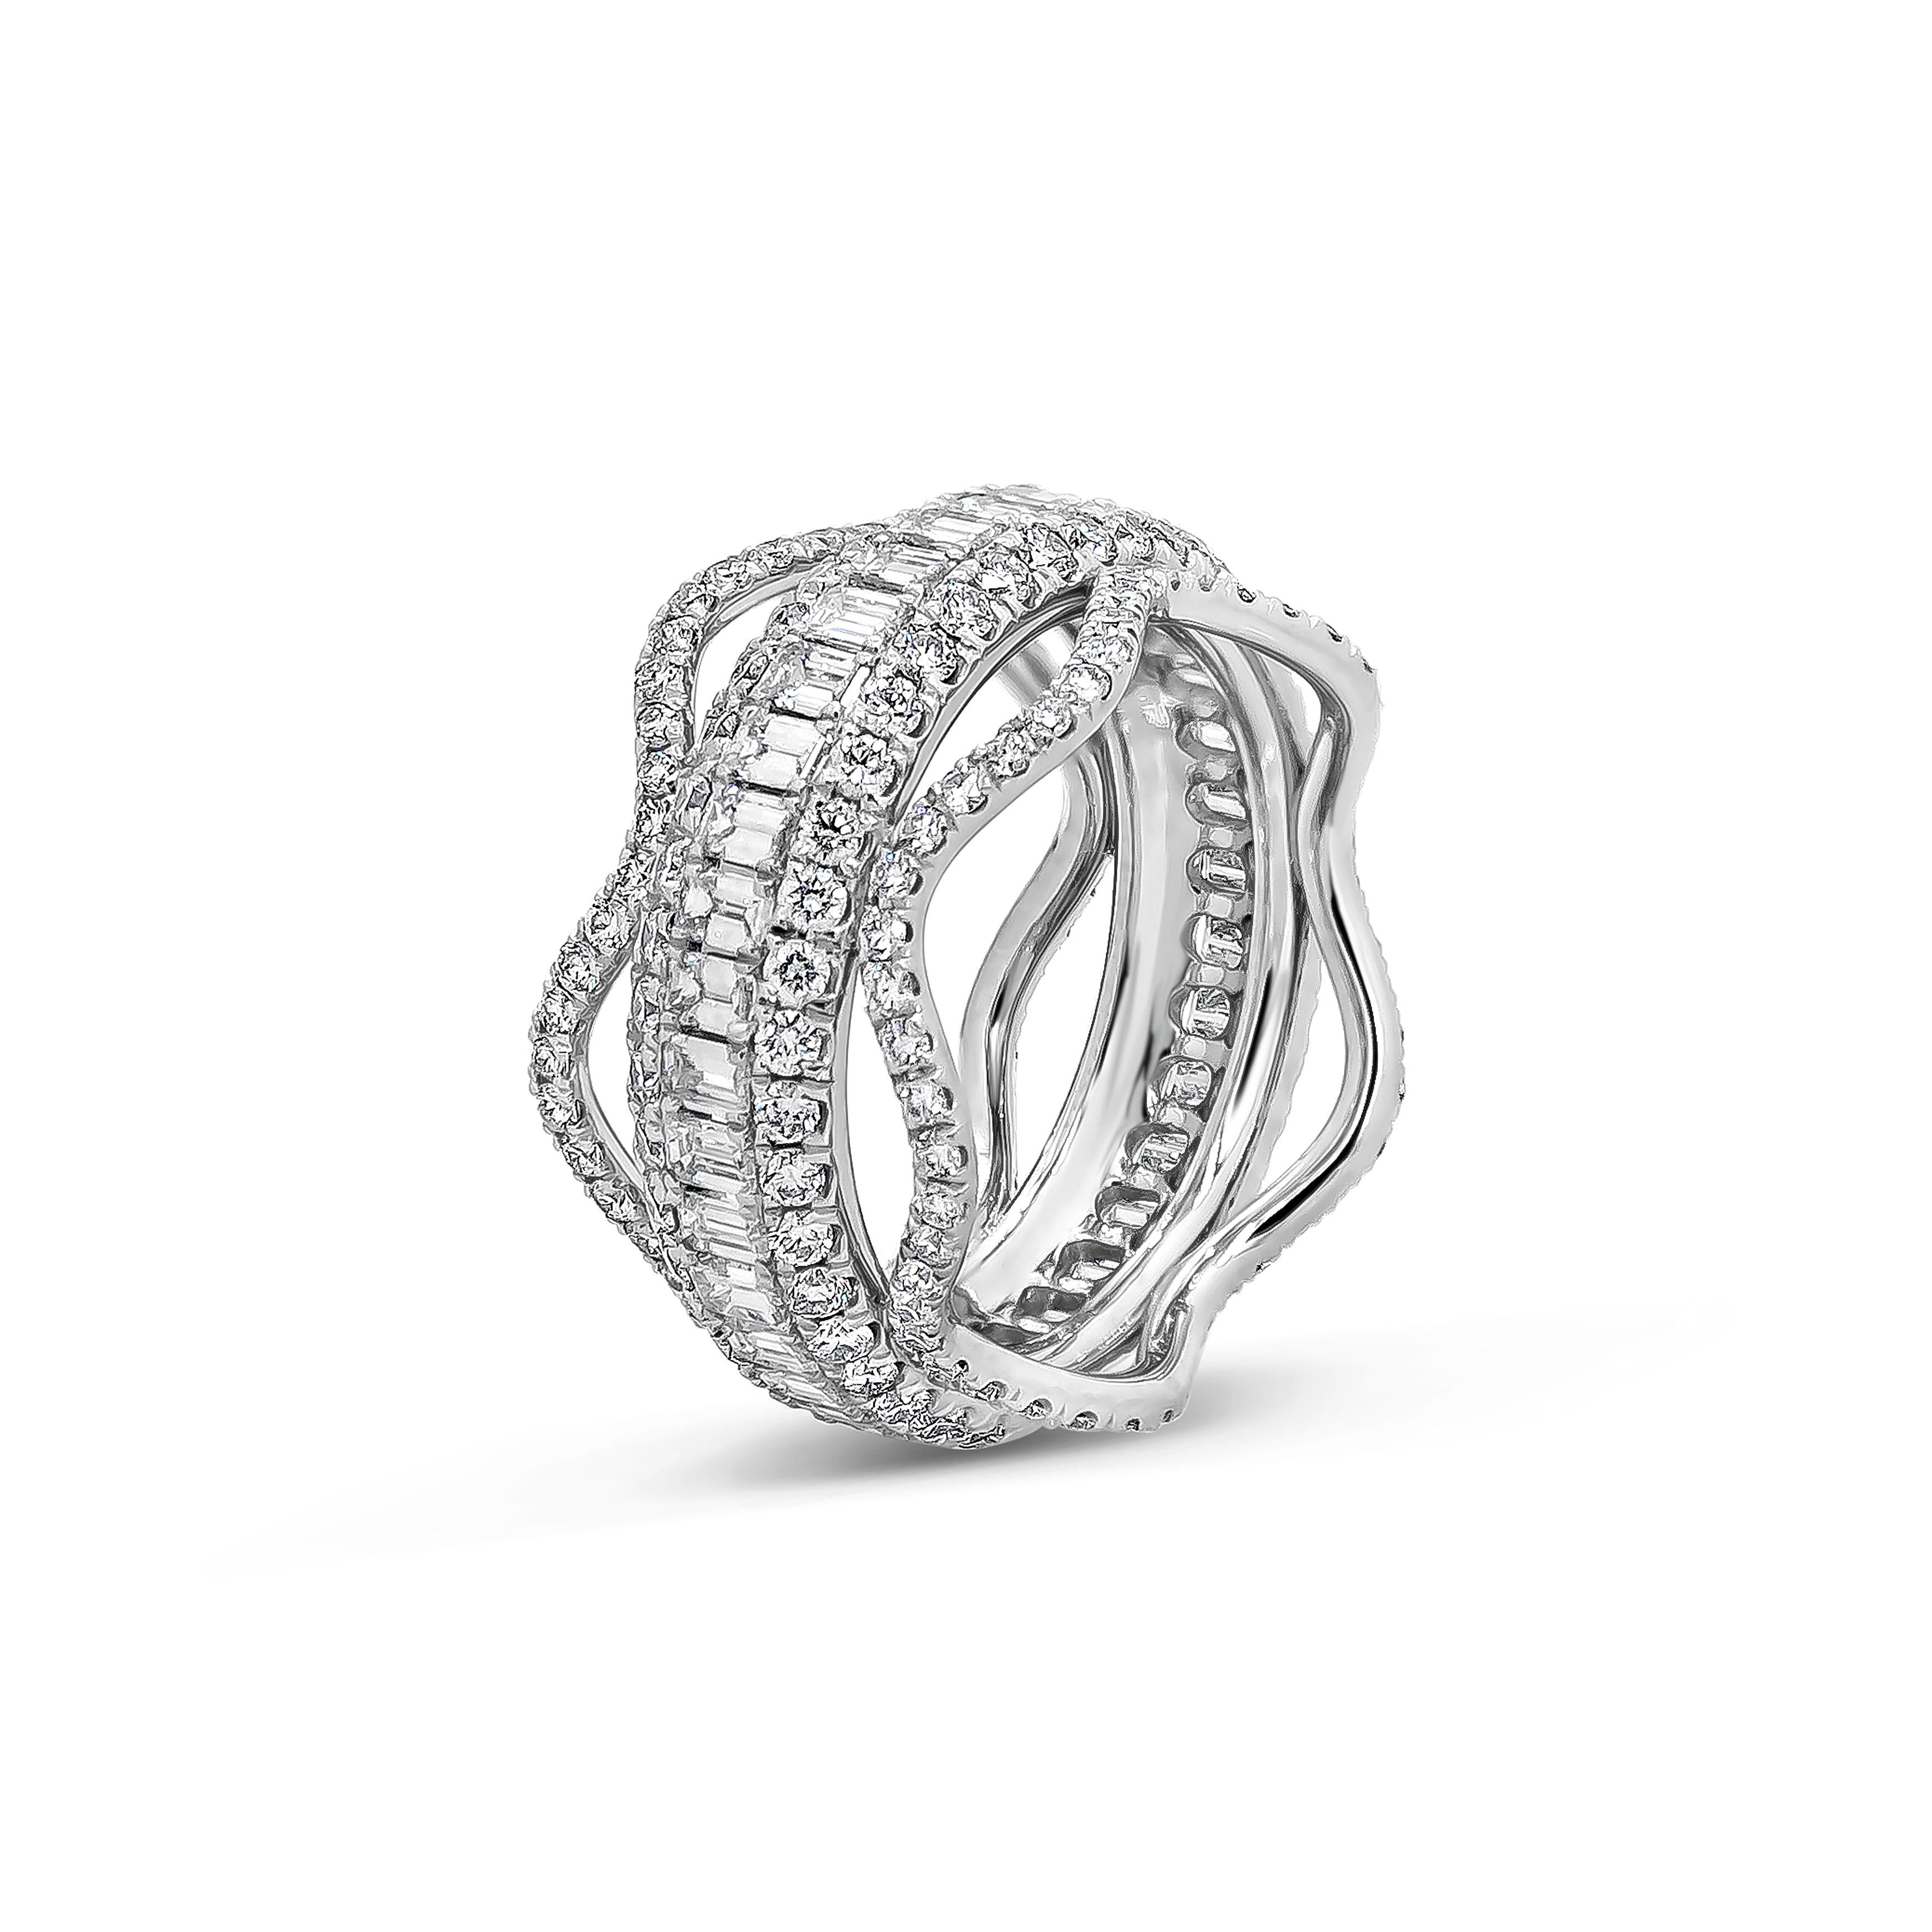 Ein einzigartiges und wunderschönes Stück mit einer Reihe von Diamanten im Smaragdschliff zwischen zwei Reihen von runden Brillanten. Jede Seite des Rings ist mit Wellen von runden Diamanten besetzt. Die Diamanten wiegen insgesamt 3.58 Karat.